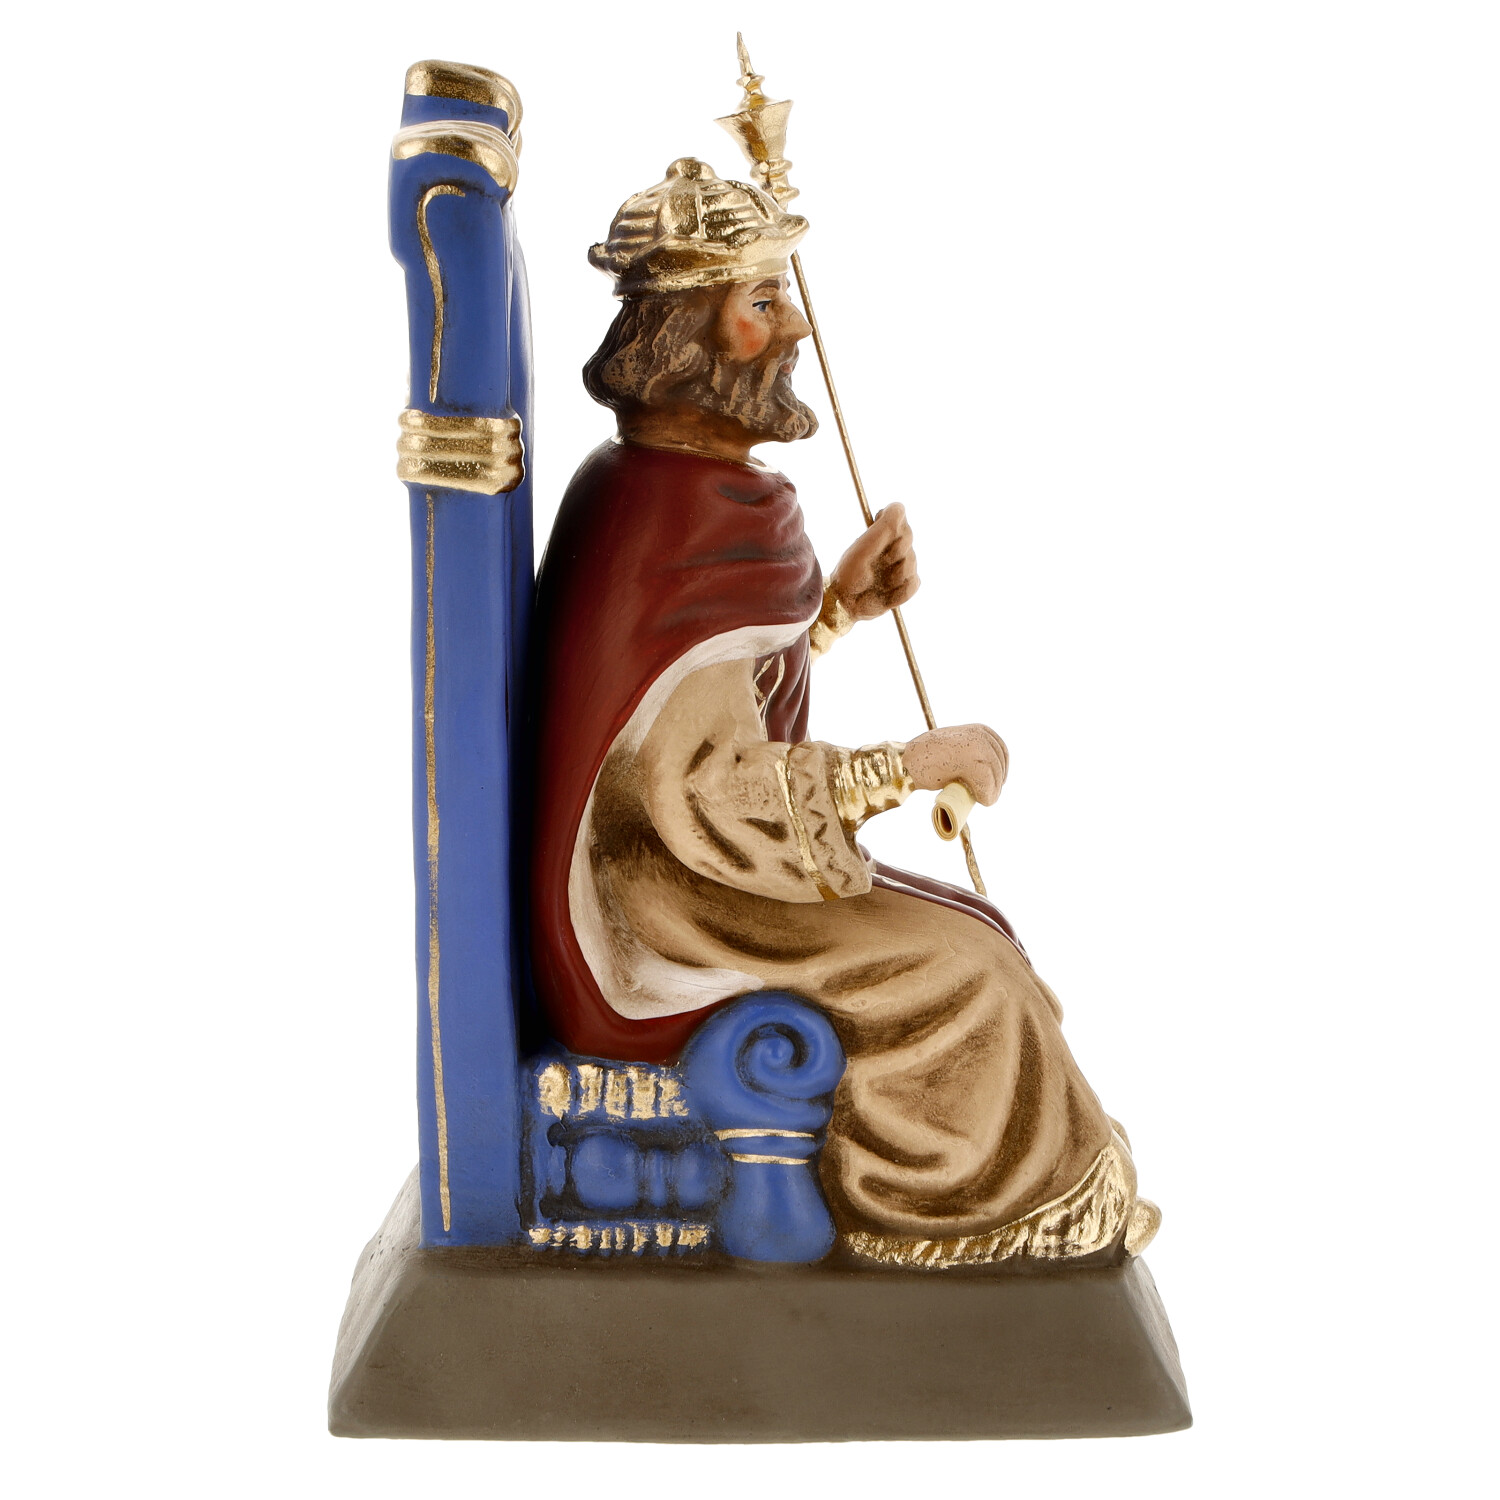 Herodes auf Thron sitzend - Marolin Nativity figure - made in Germany